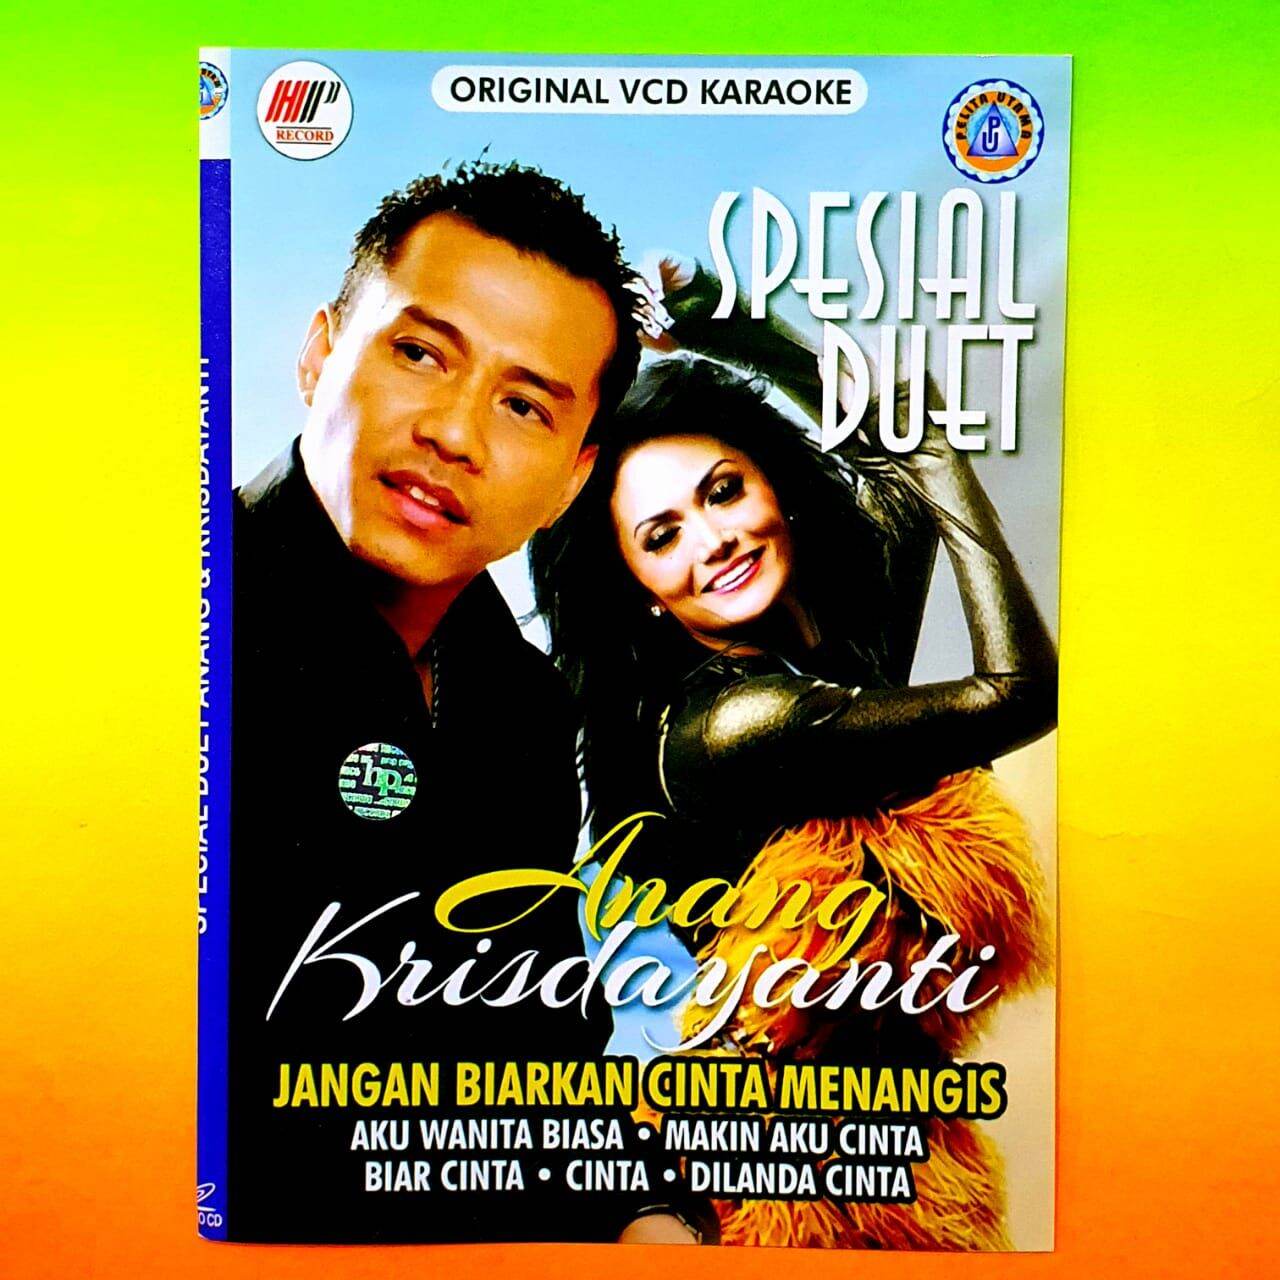 Kaset Vcd Video Lagu Karaoke Duet Anang Krisdayanti Lagu Karaoke Pop Indonesia Duet Terbaik Kaset Vcd